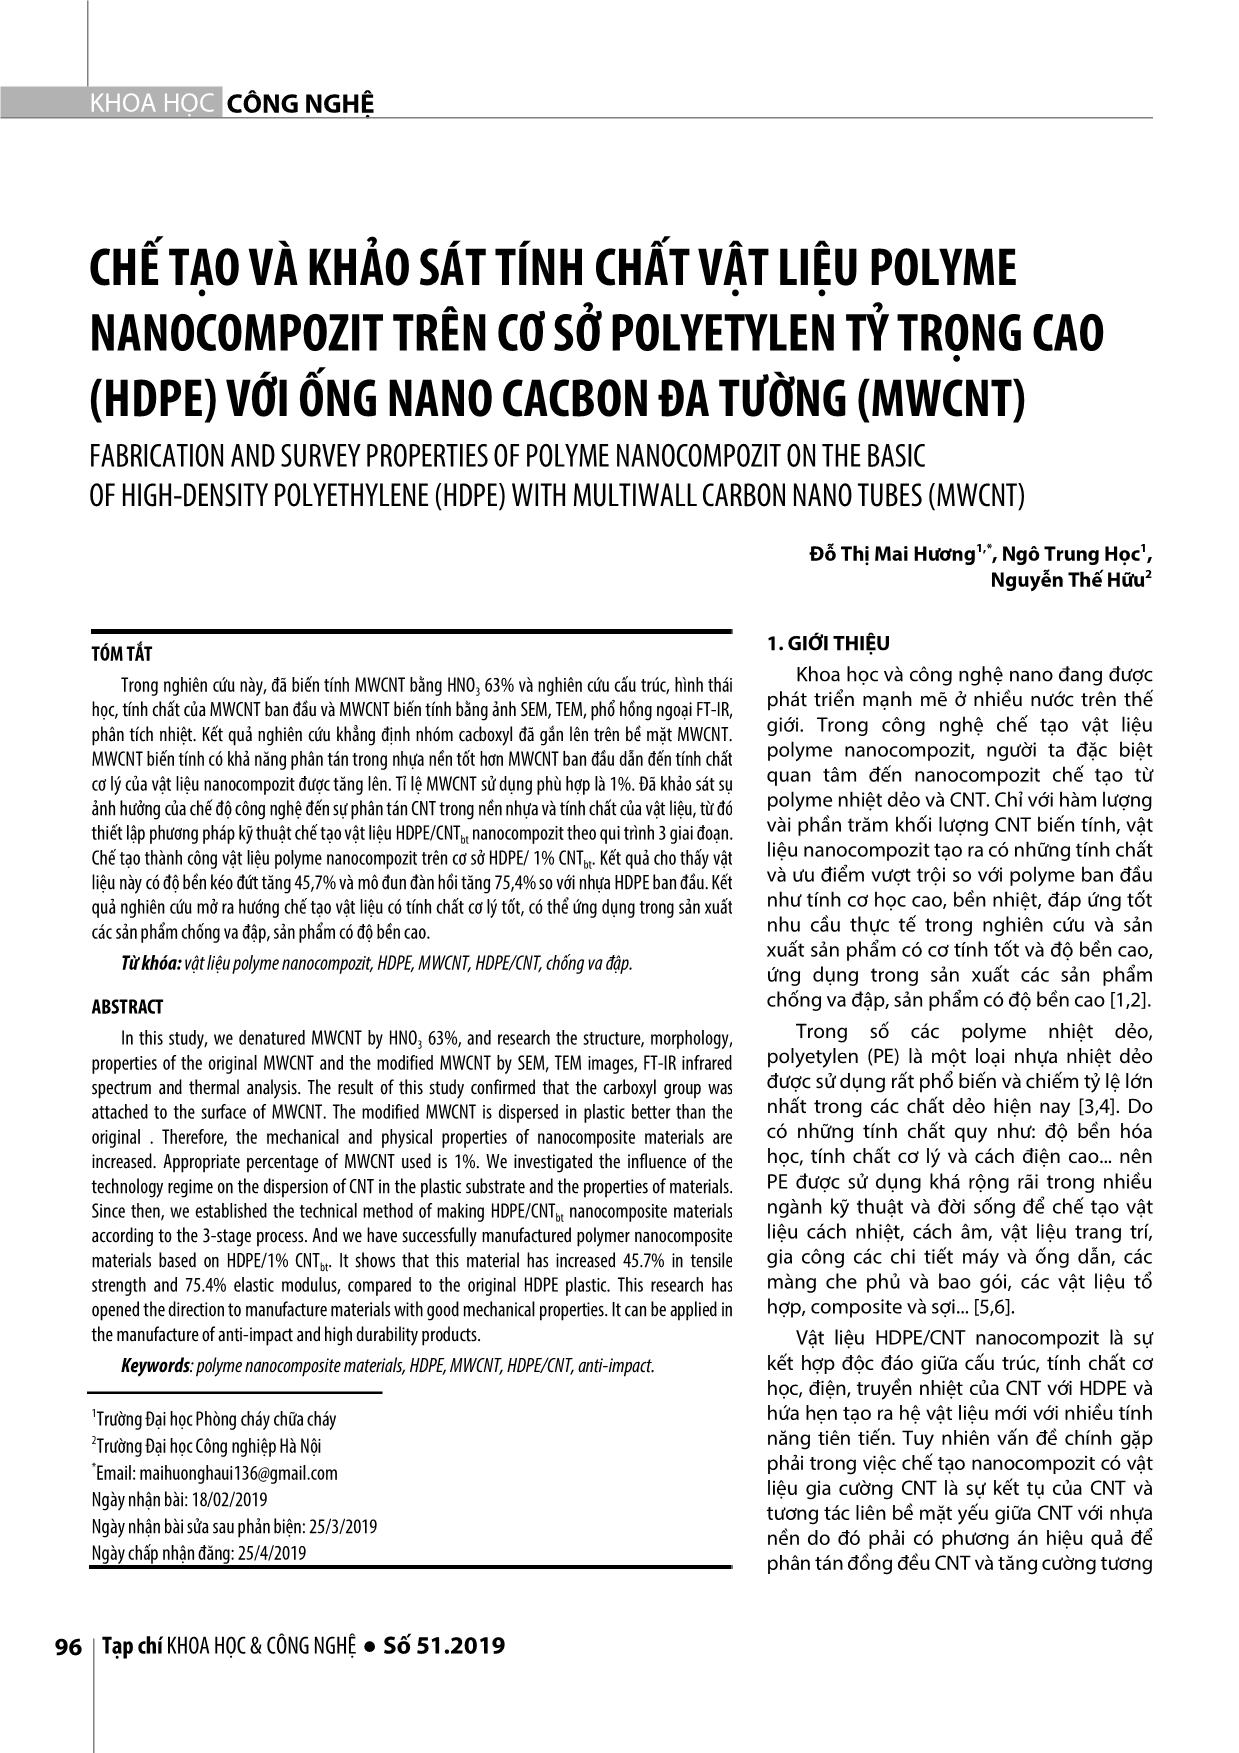 Chế tạo và khảo sát tính chất vật liệu polyme nanocompozit trên cơ sở polyetylen tỷ trọng cao (HDPE) với ống nano cacbon đa tường (MWCNT) trang 1